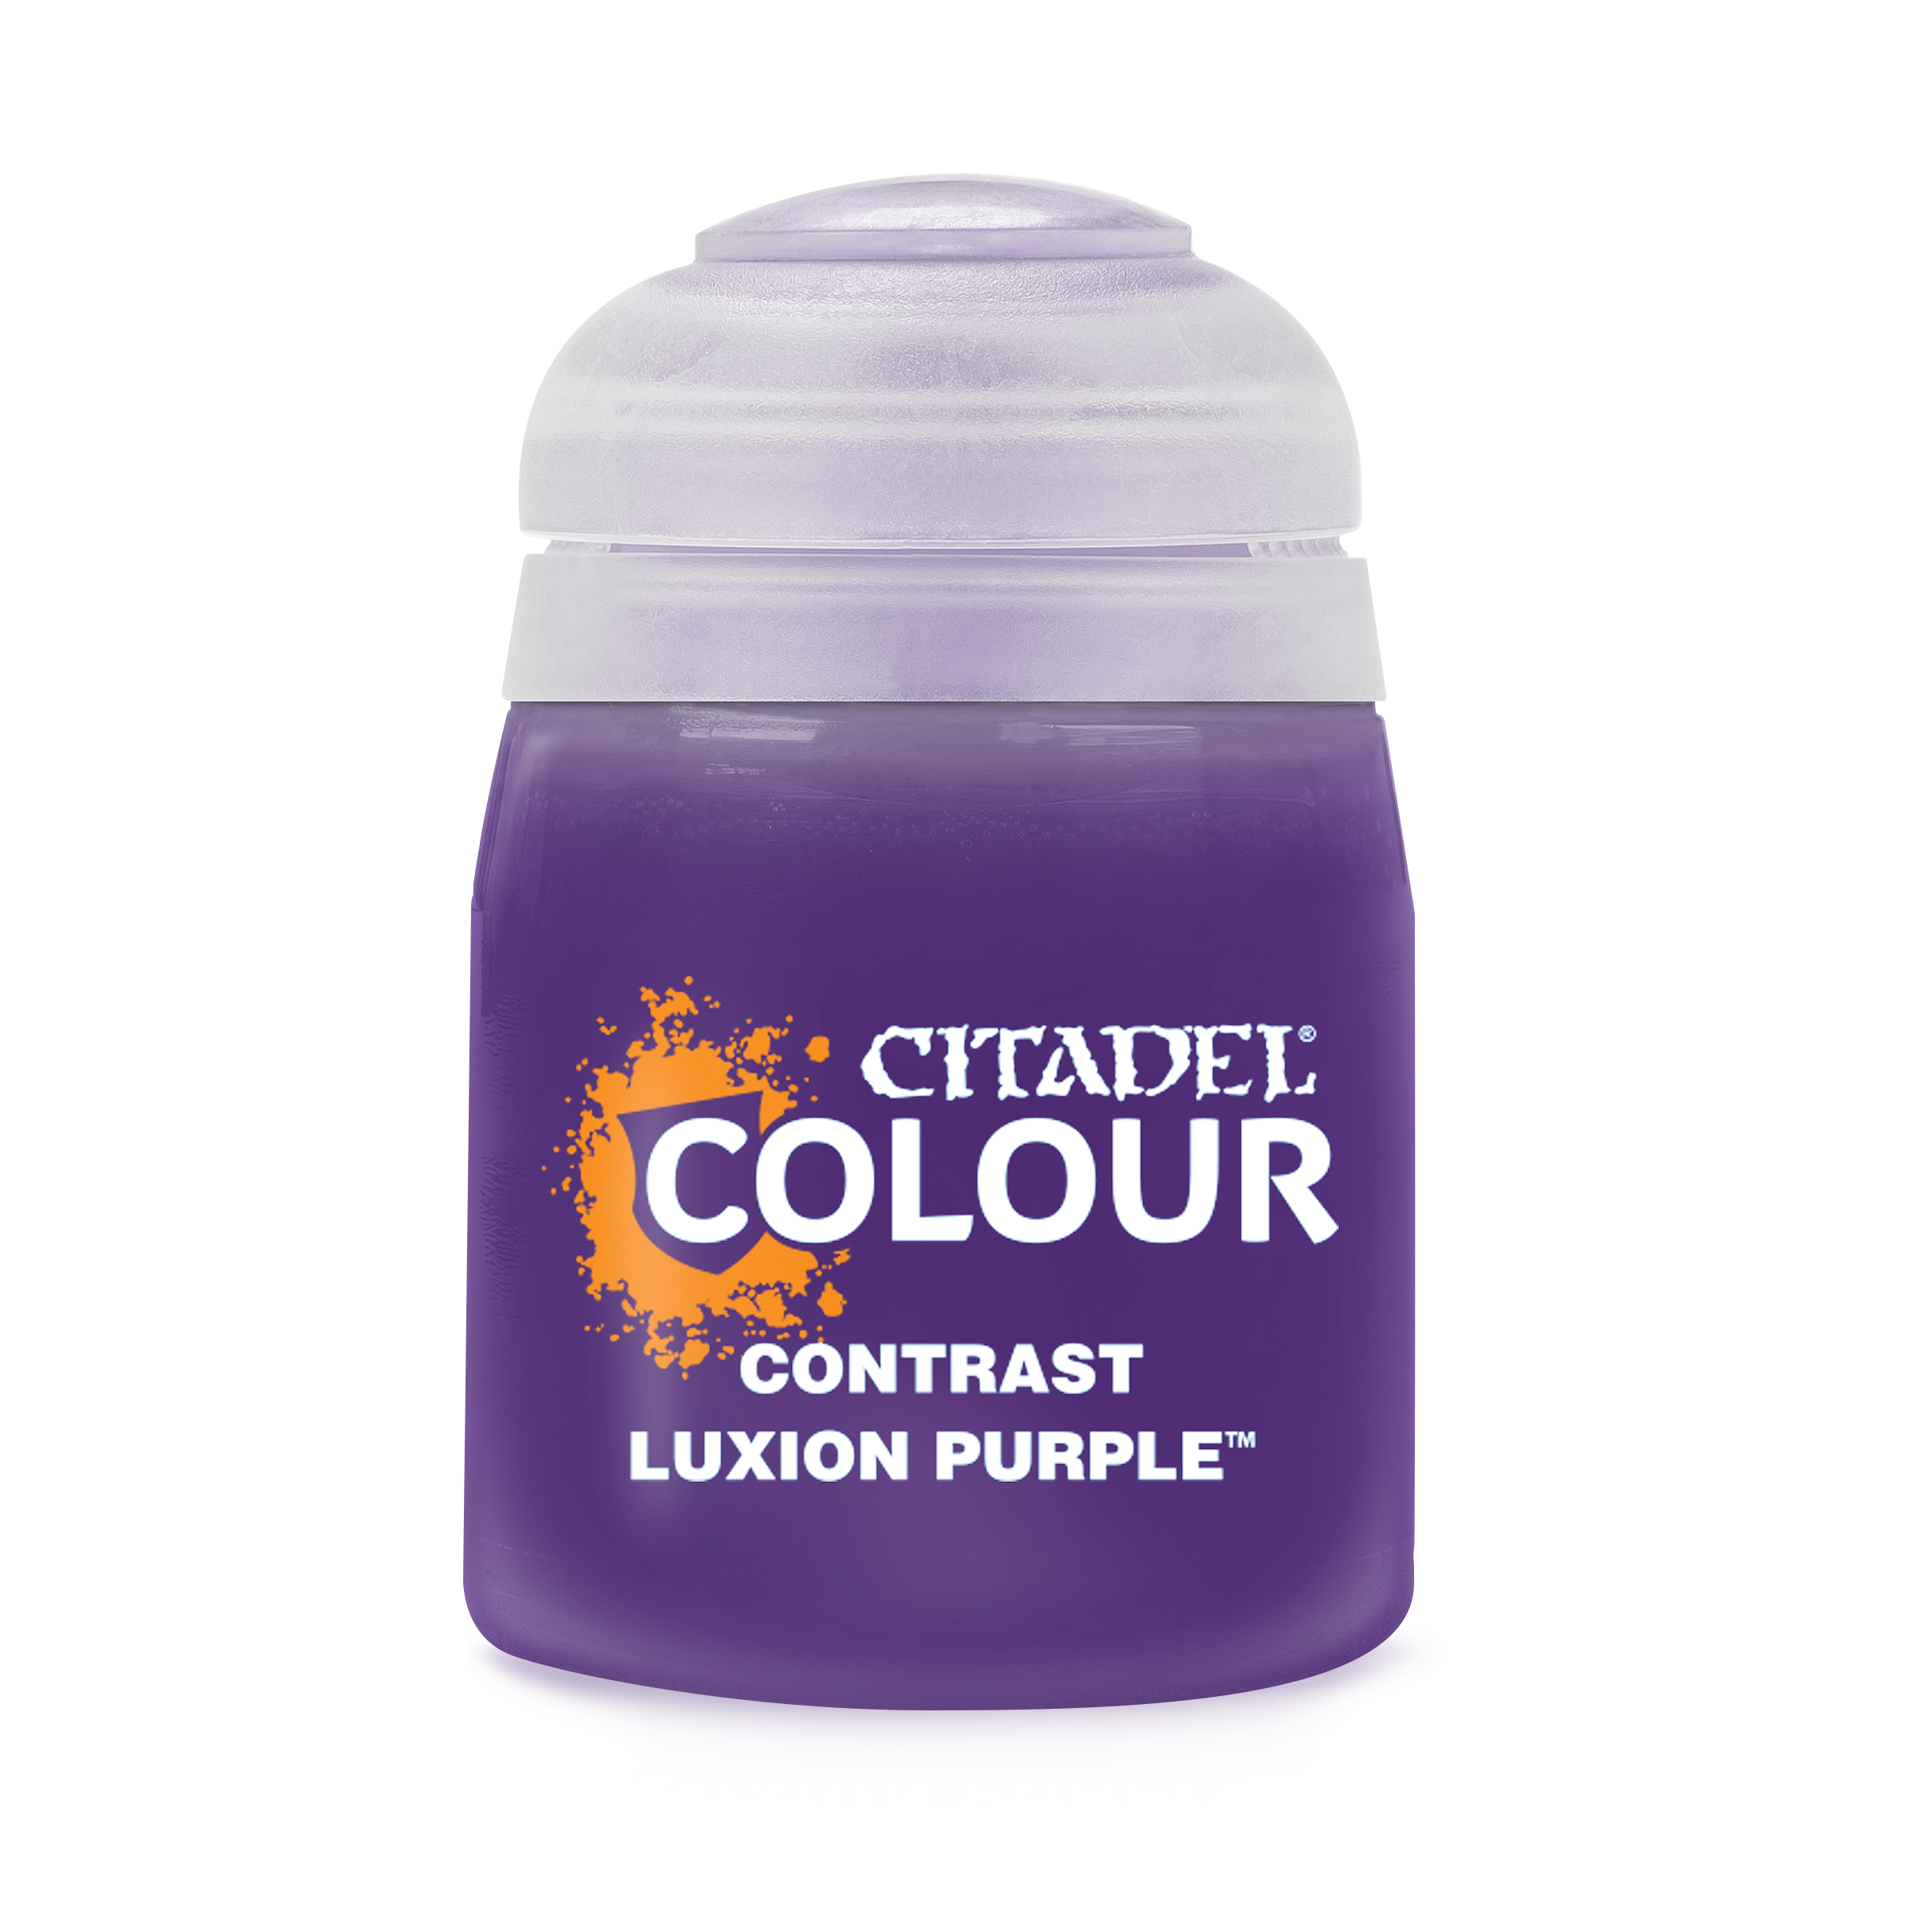 Contrast Luxion Purple - Citadel Colour